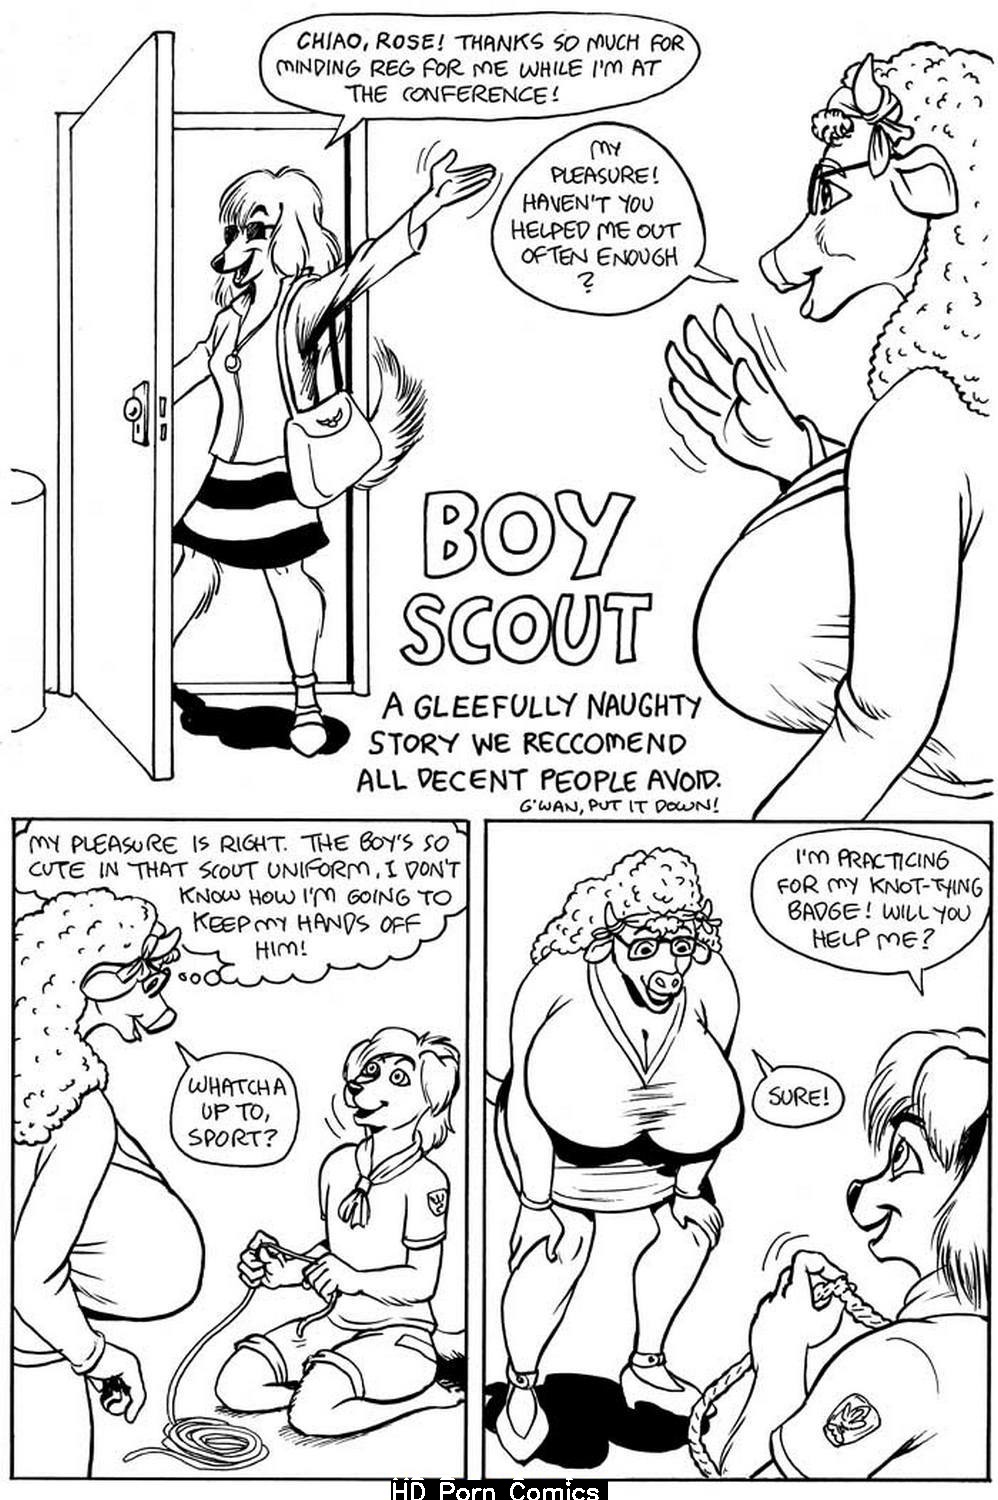 Nudest Boy Scout Porn - Boy Scout comic porn - HD Porn Comics